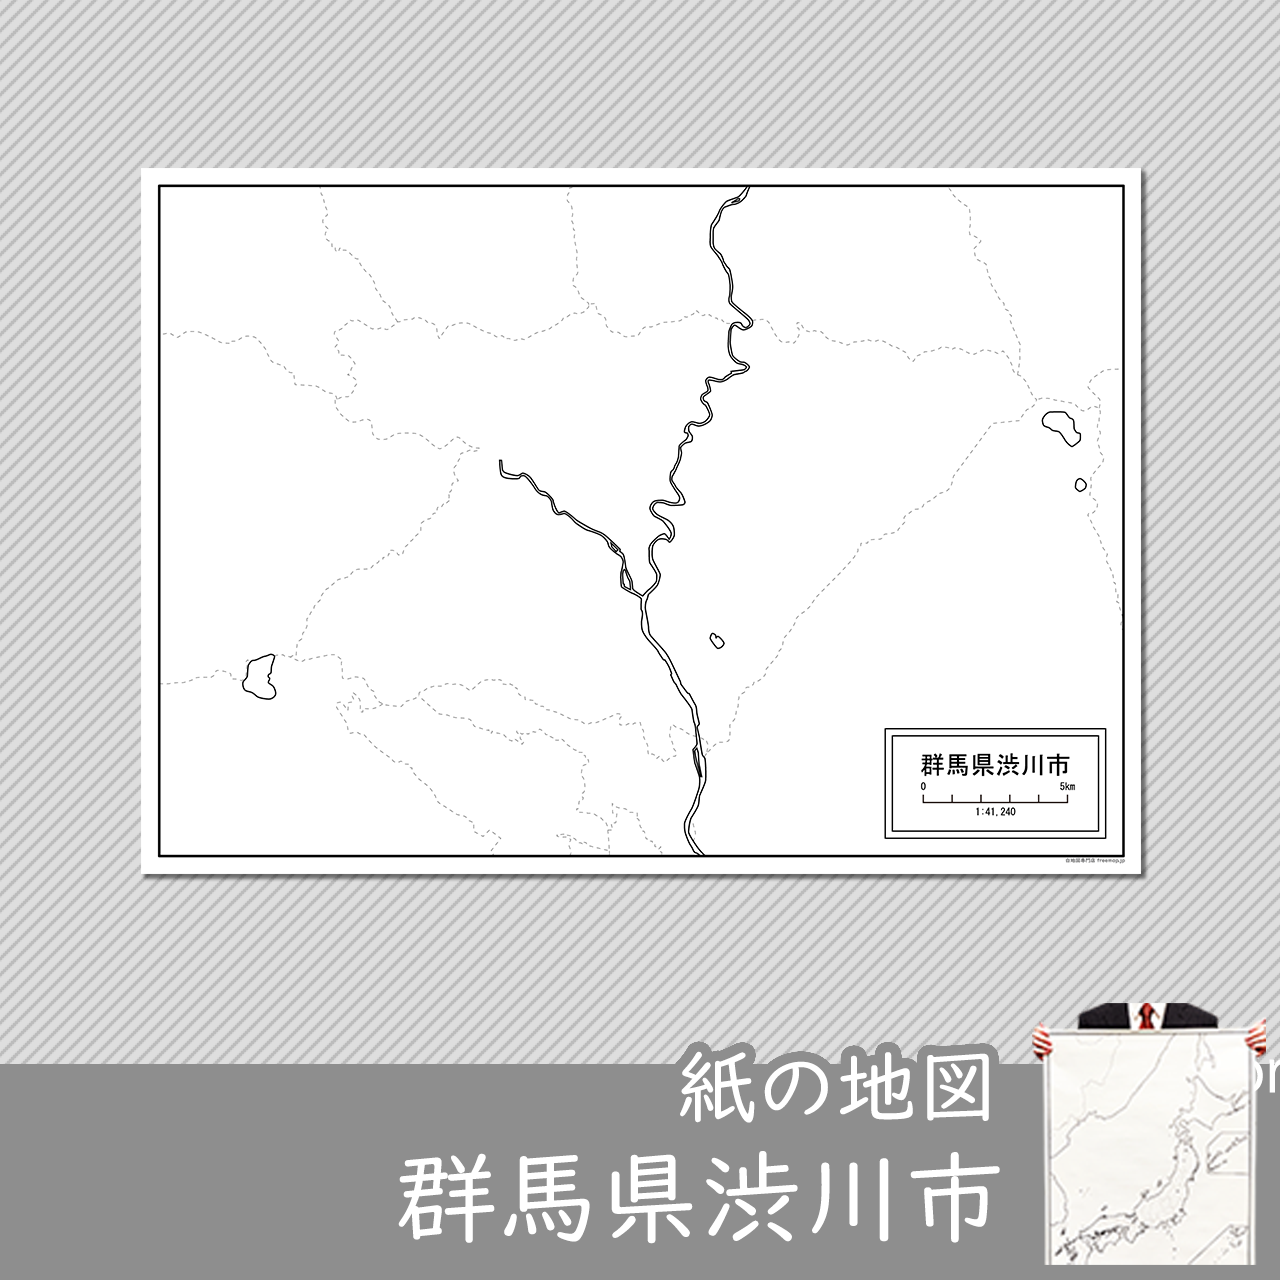 渋川市の紙の白地図のサムネイル